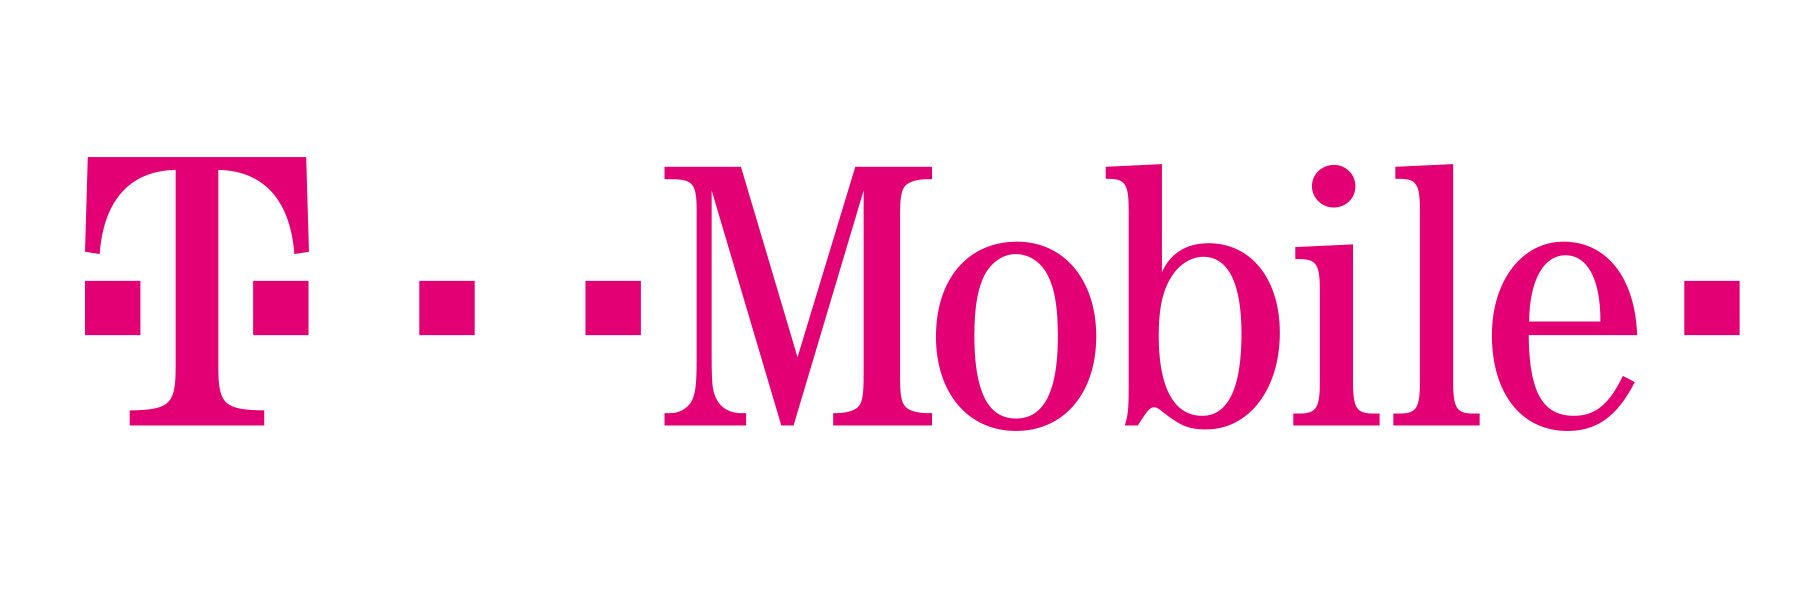 T_Mobile_logo_Magenta-1.jpg